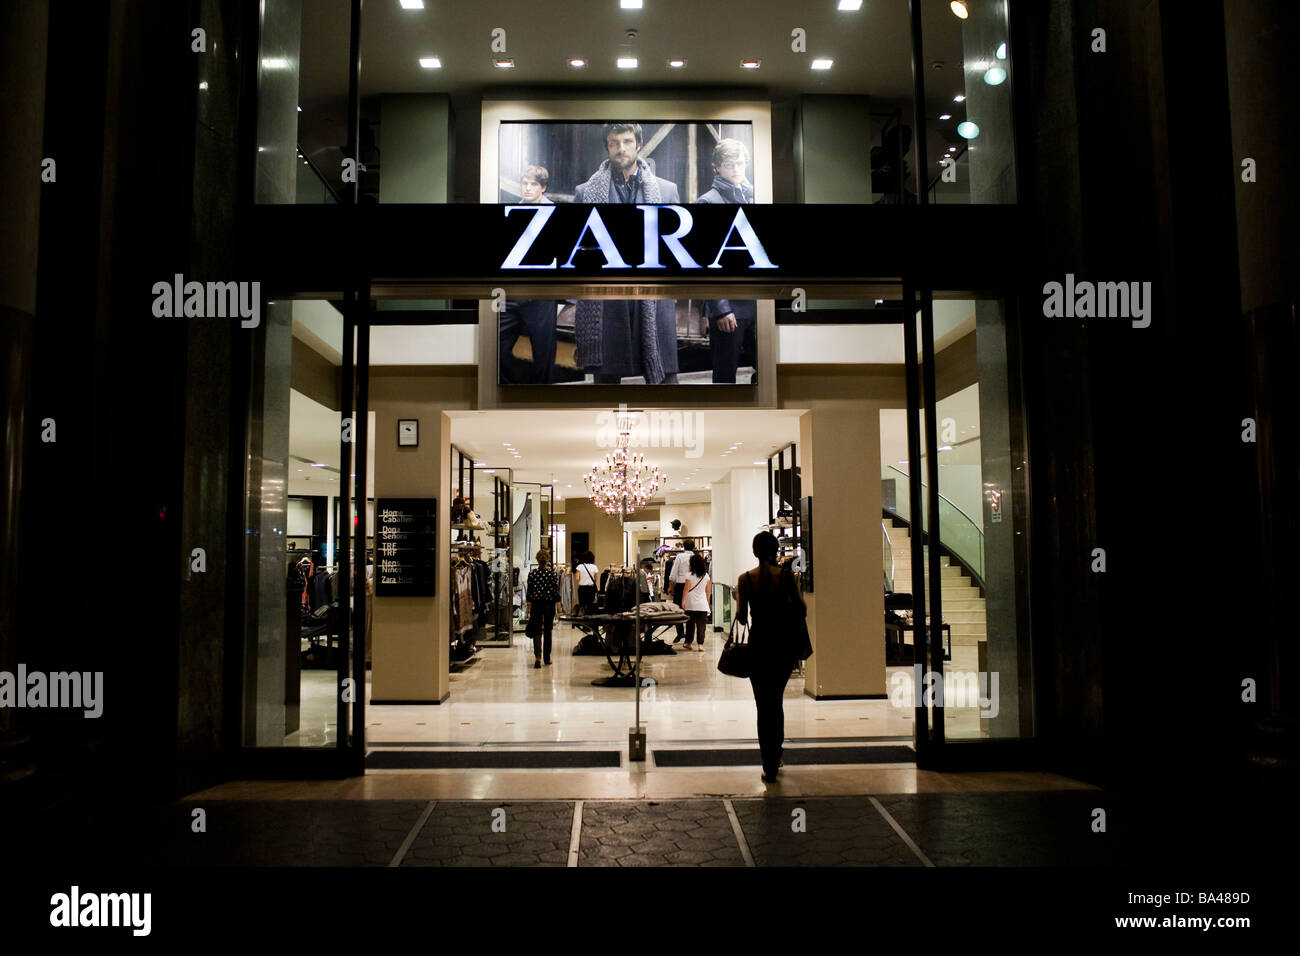 Zara shop Banque de photographies et d'images à haute résolution - Page 7 -  Alamy